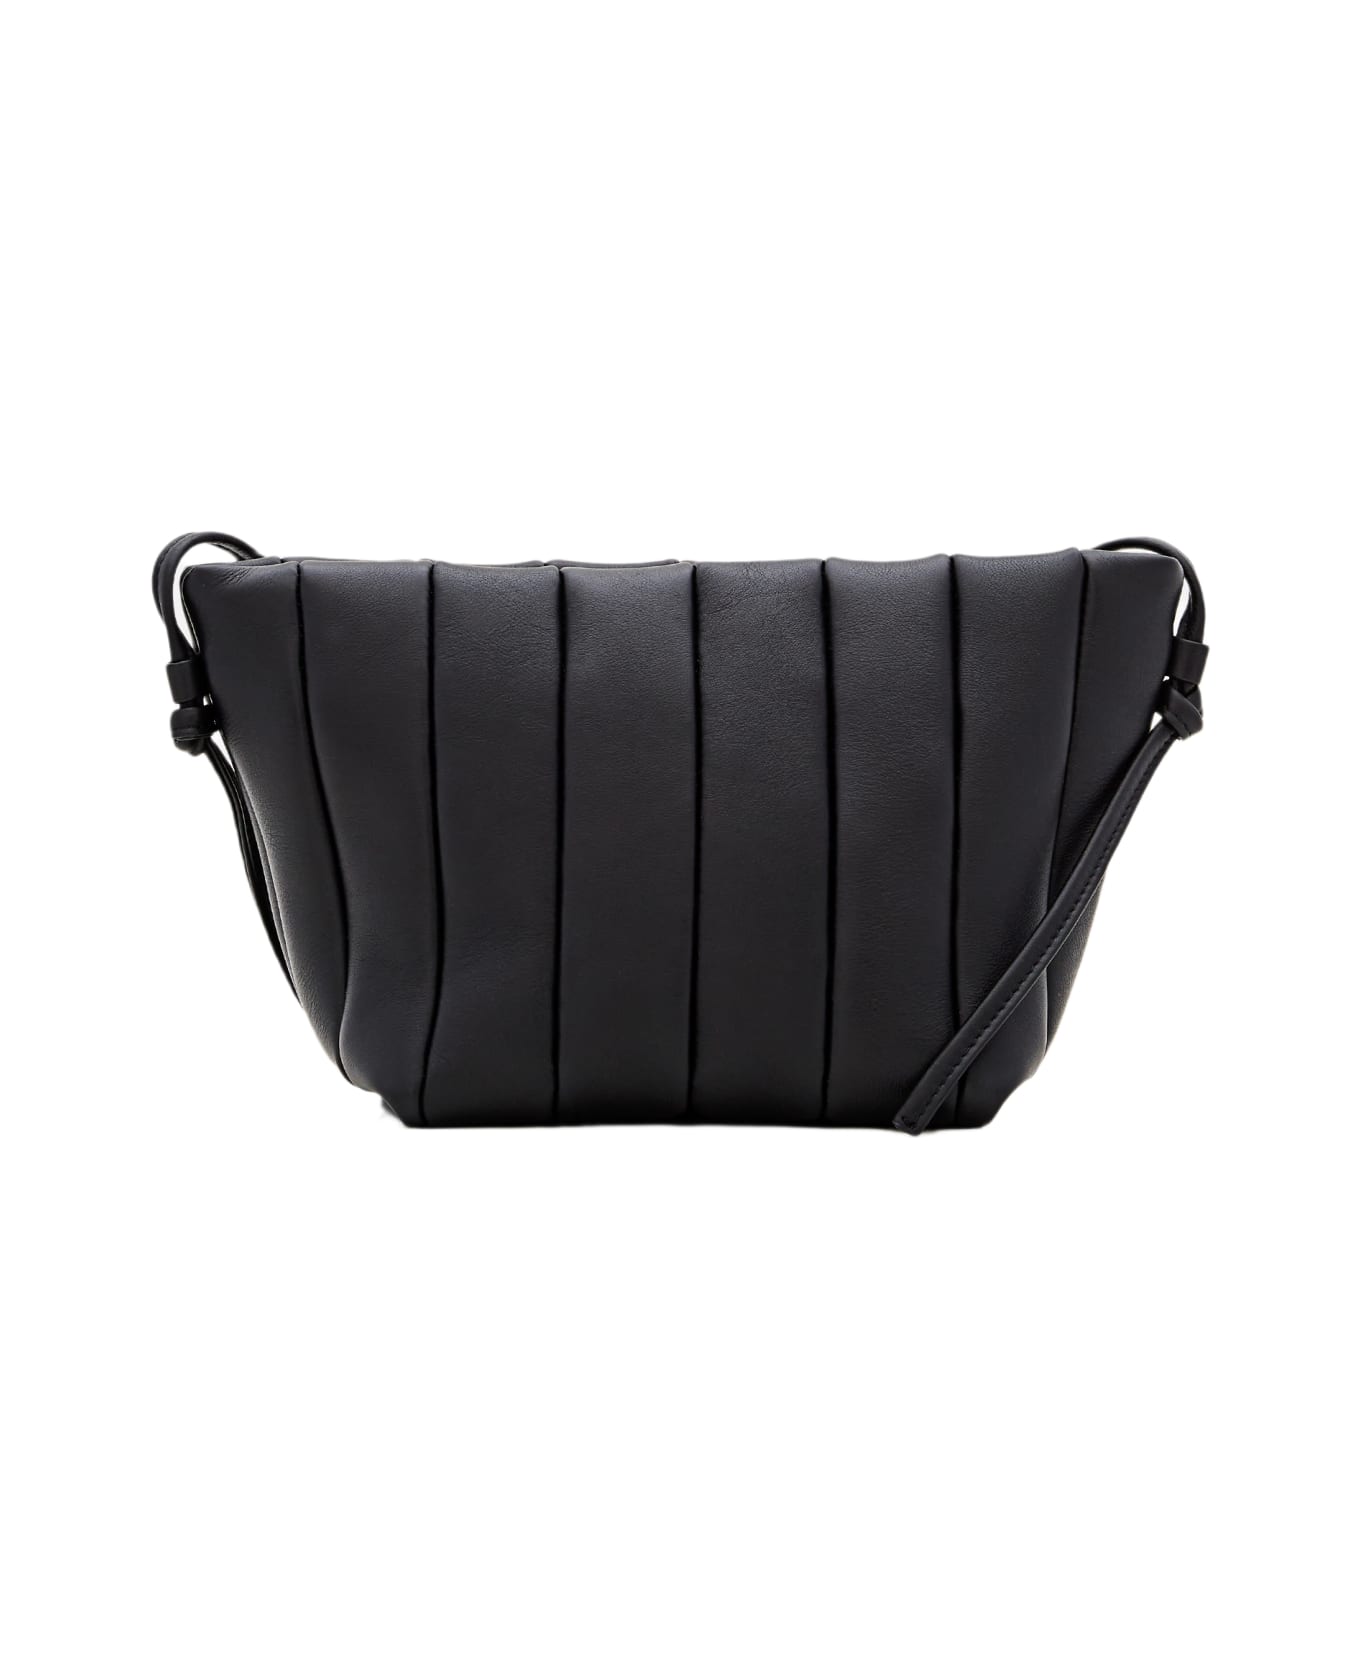 Maeden Boulevard Leather Shoulder Bag - Black